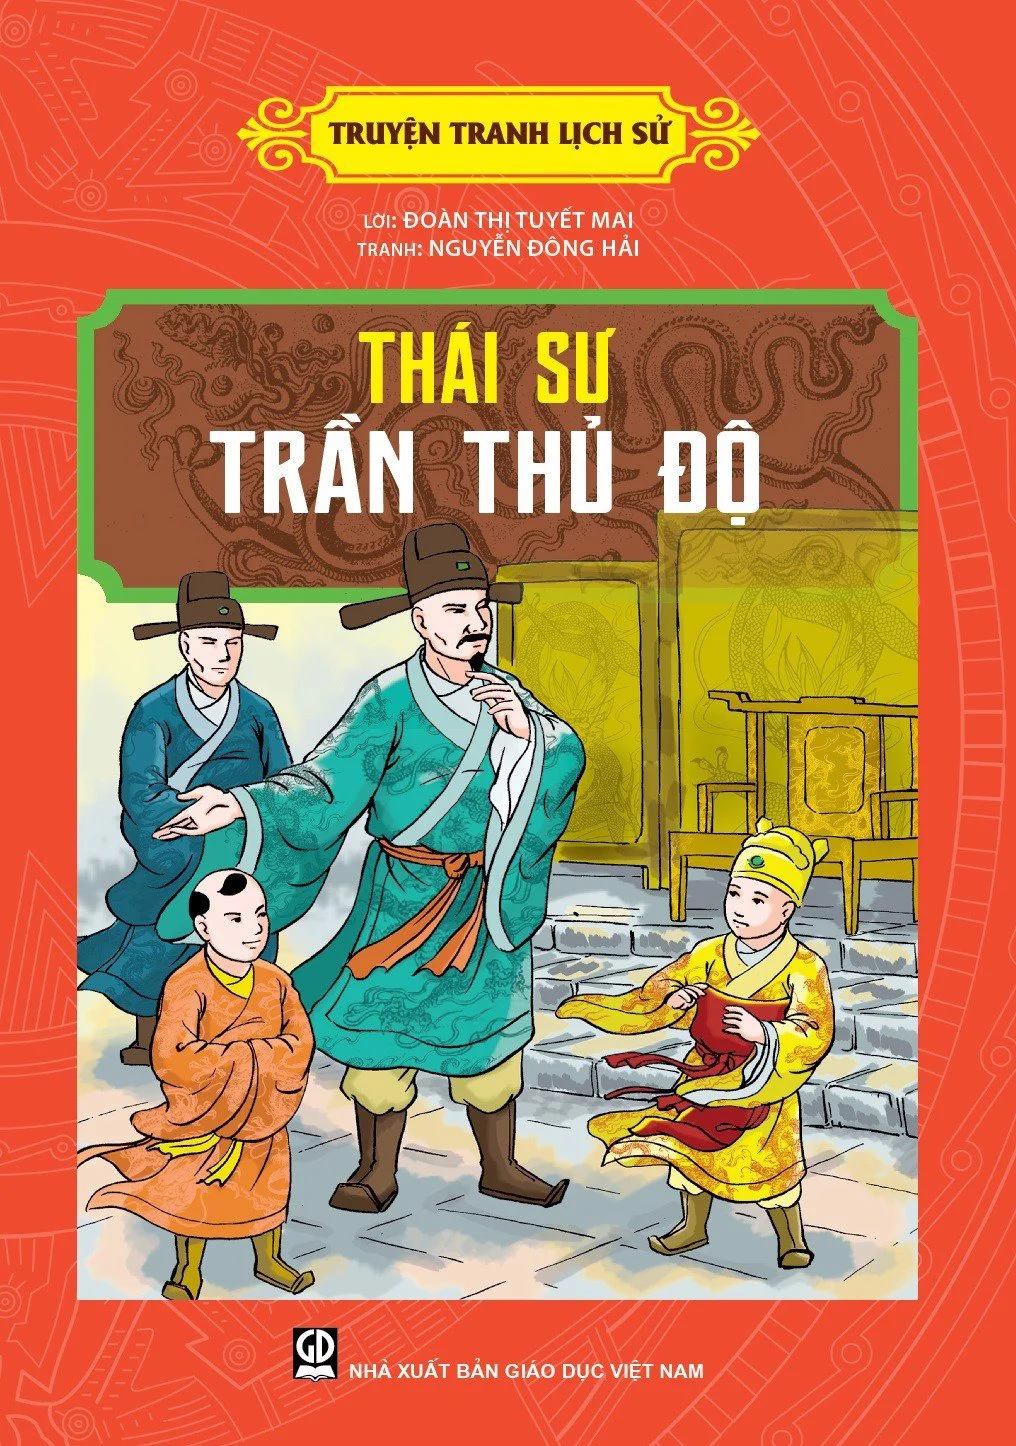 Bài dự thi: Giới thiệu cuốn sách em yêu SBD 85 - Thái sư Trần Thủ Độ - Nguyễn Ngân Hà 4A4 - THĐY